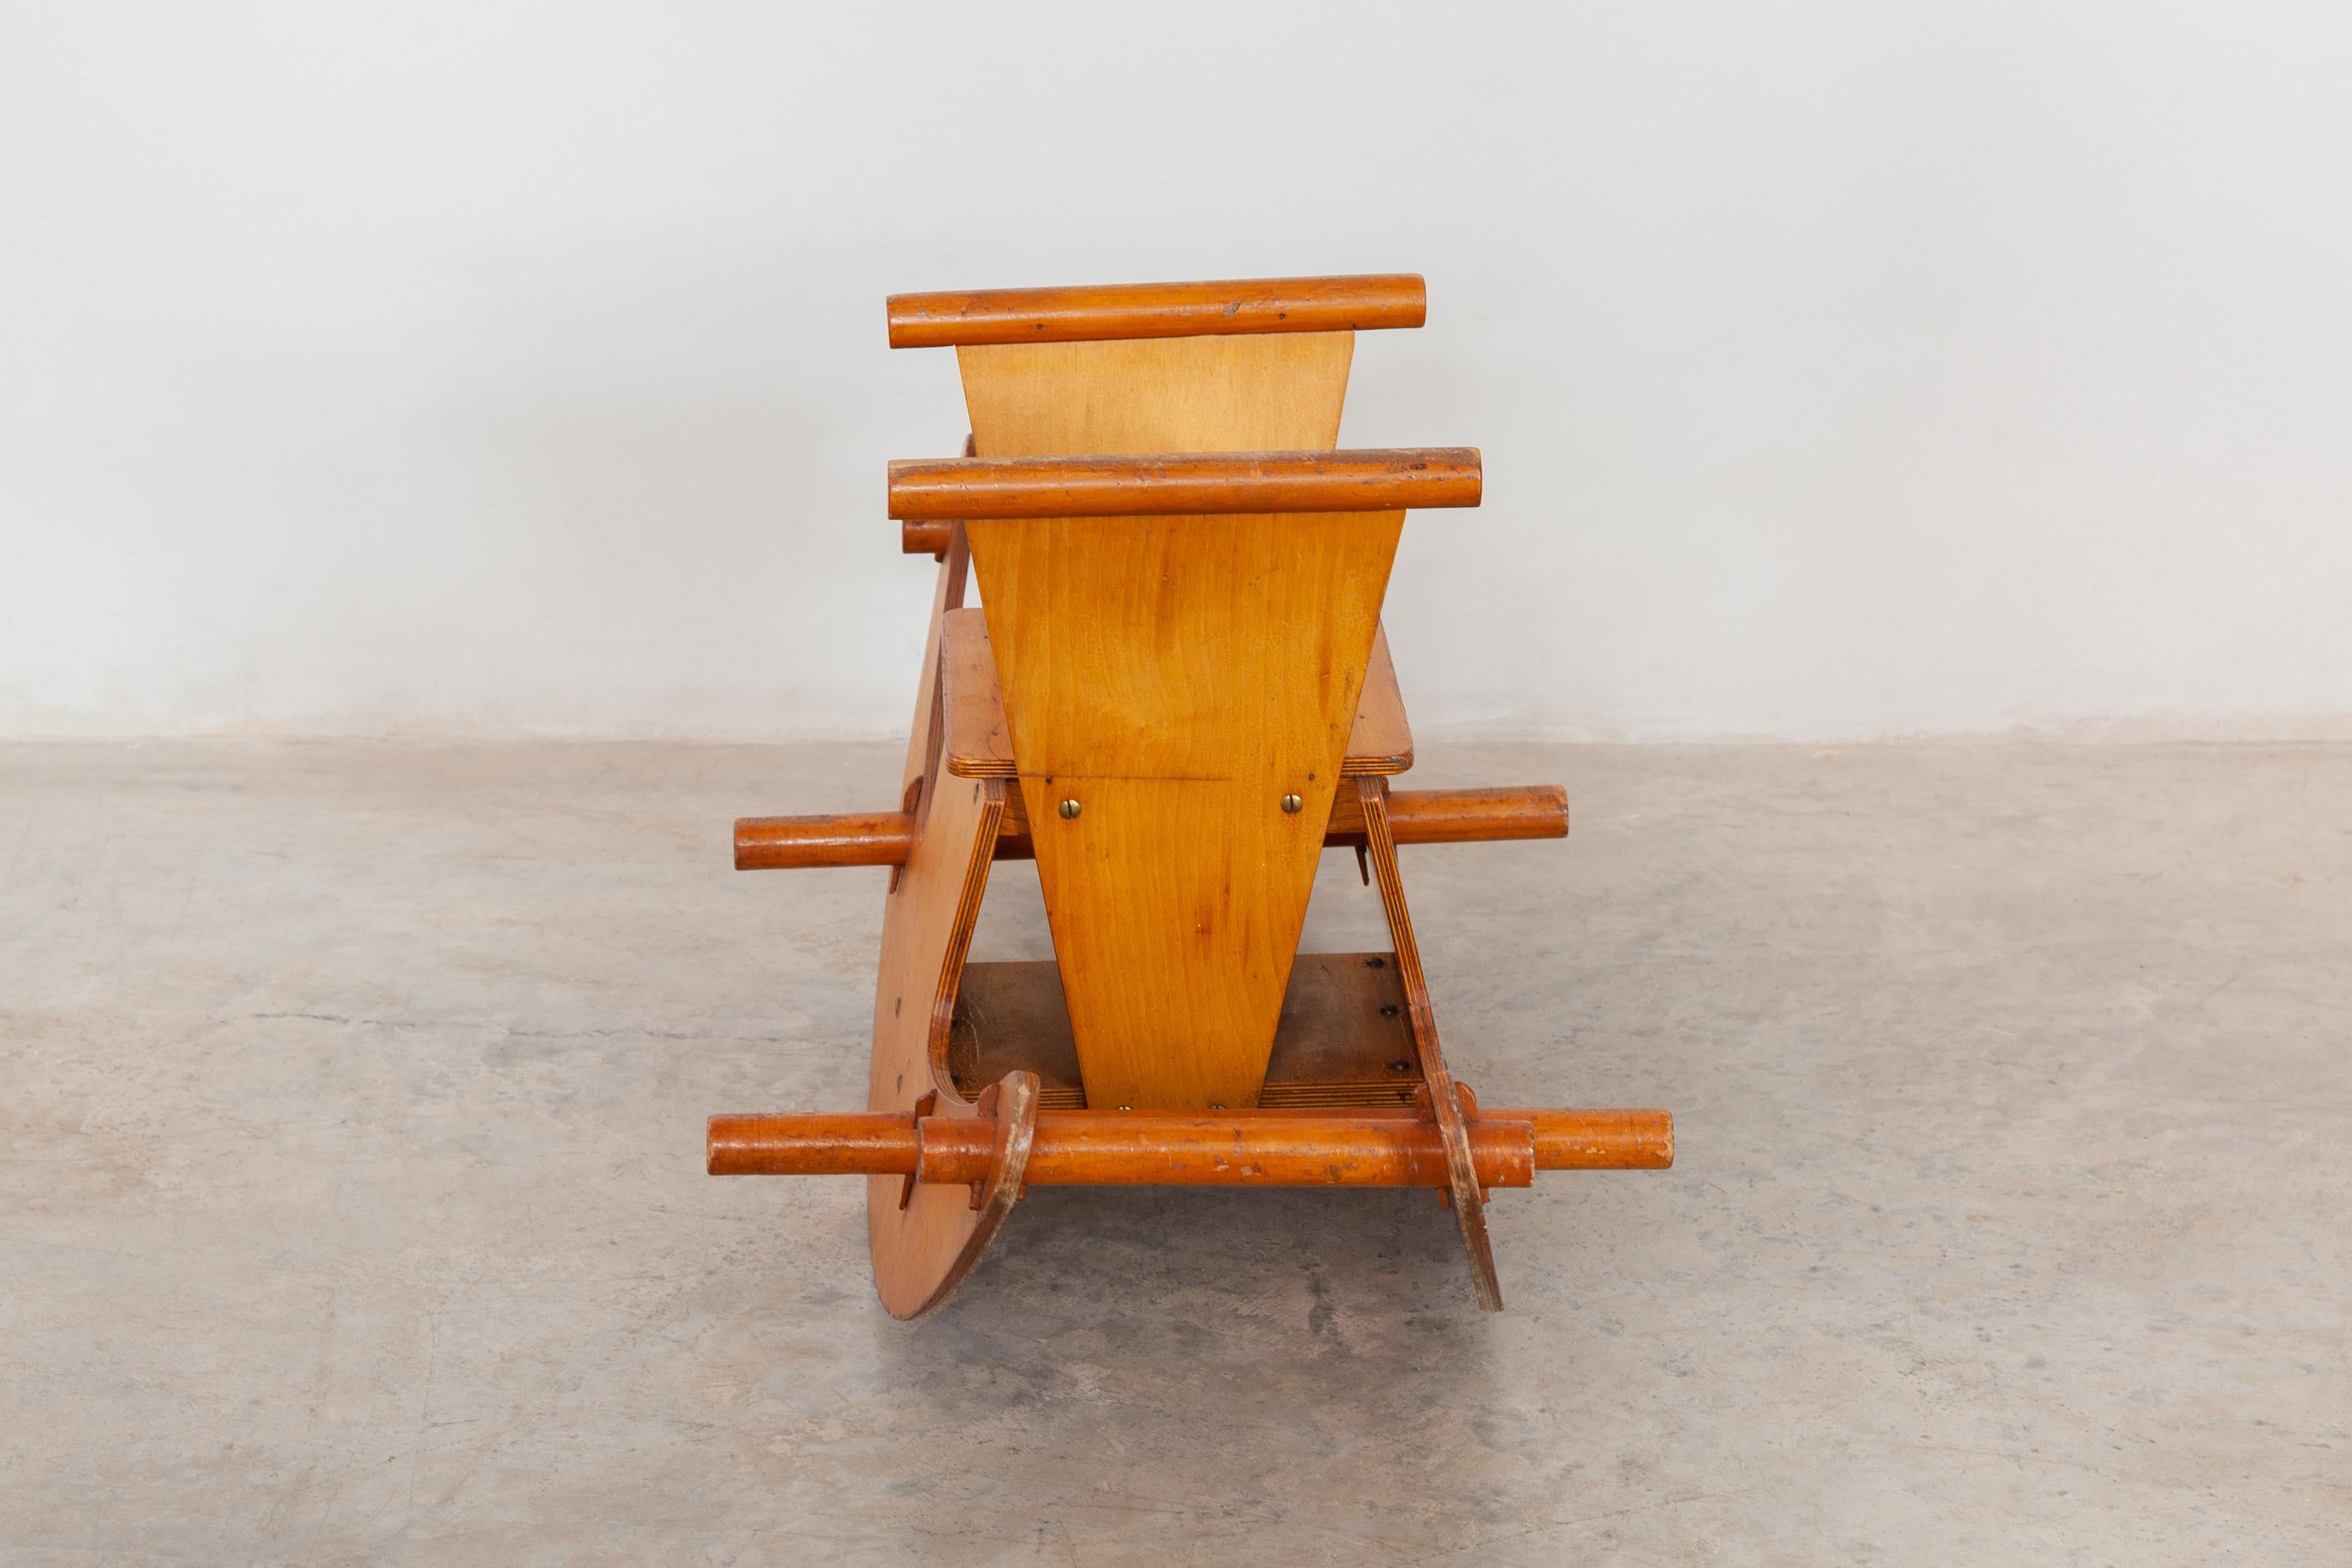 Sehr schöner Kinder-Schaukelstuhl aus Buchensperrholz minimalistische Handwerkskunst das Design des Schaukelstuhls ist im Wesentlichen eine Anspielung auf die Form einer schwingenden Banane!